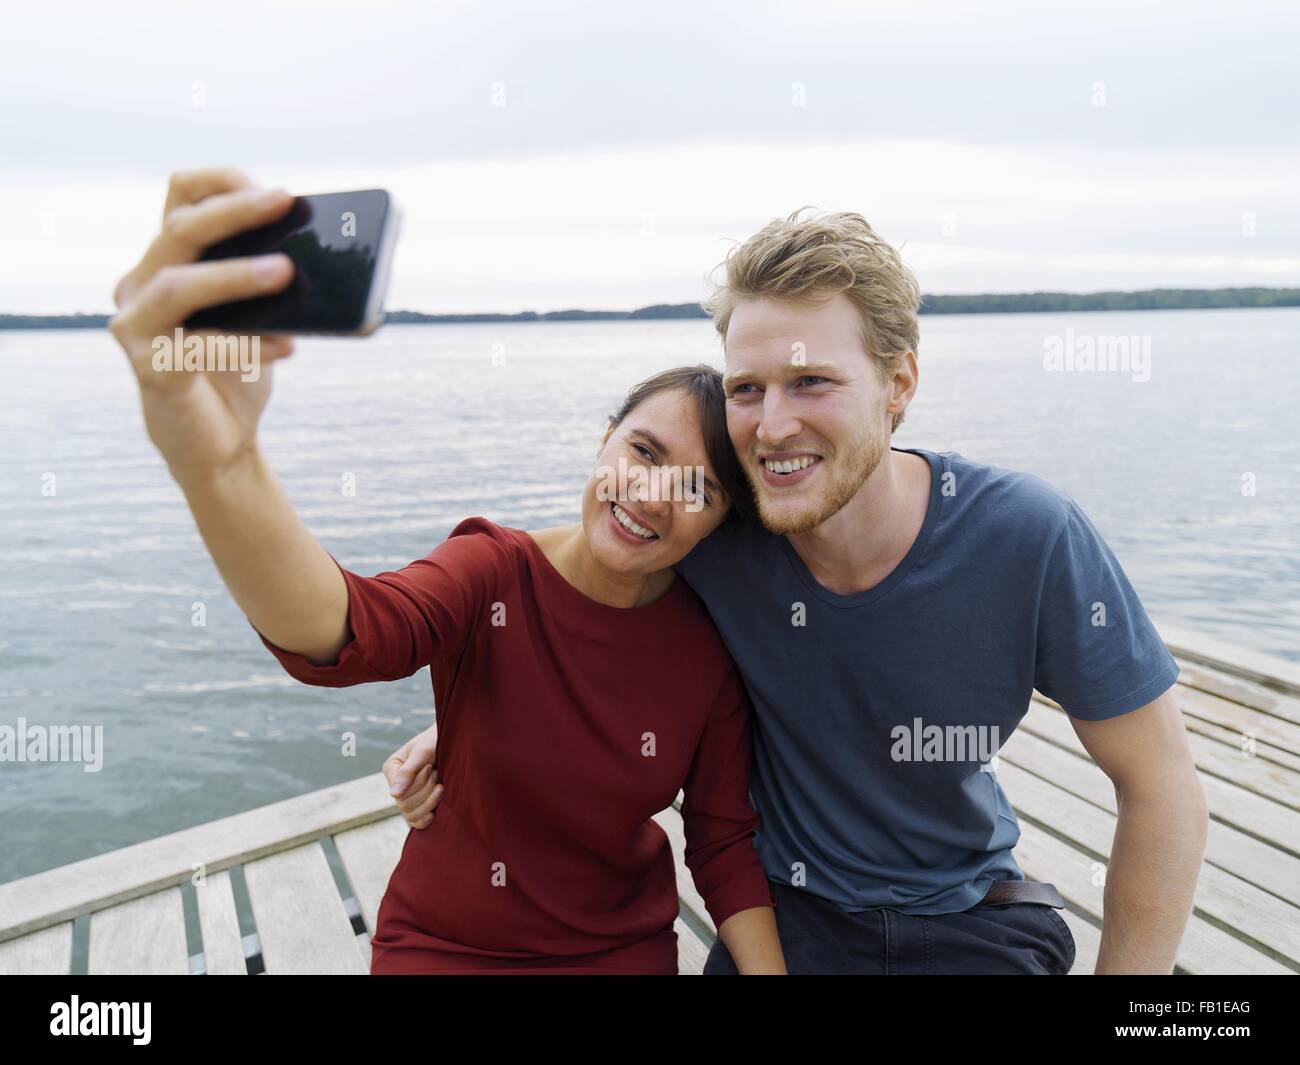 Paar am Pier Seite an Seite mit Smartphone zu Selfie lächelnd, Kopenhagen, Dänemark Stockfoto